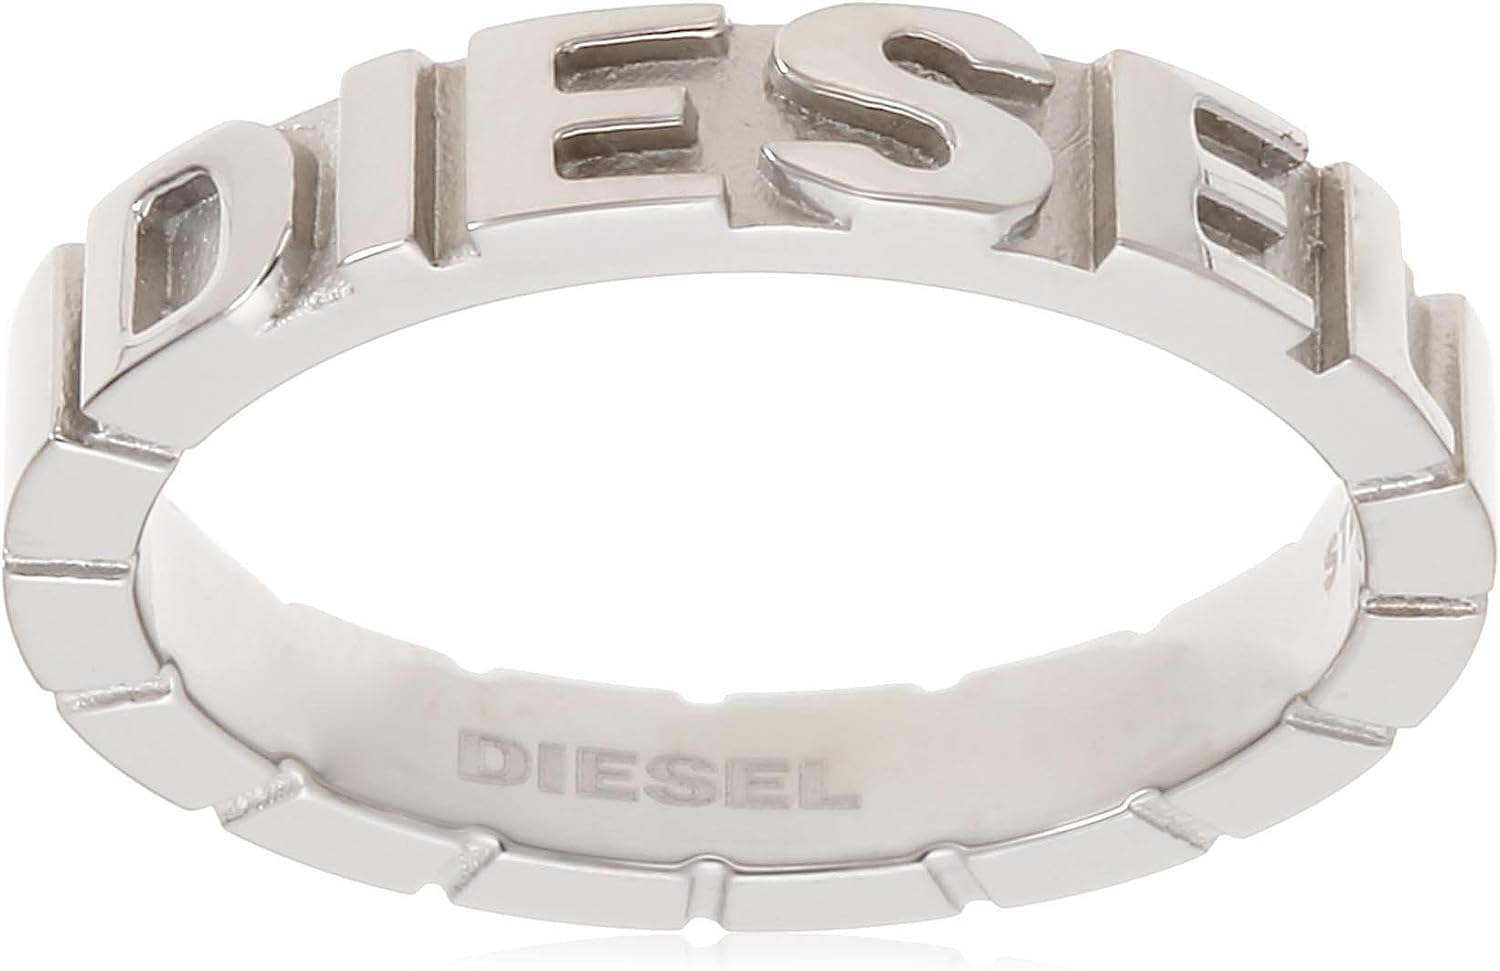 ディーゼル 指輪 メンズ ディーゼル リング メンズ レディース シルバー シンプル DIESEL DX0030040 Steel Cubed Ring 指輪 US8 16号